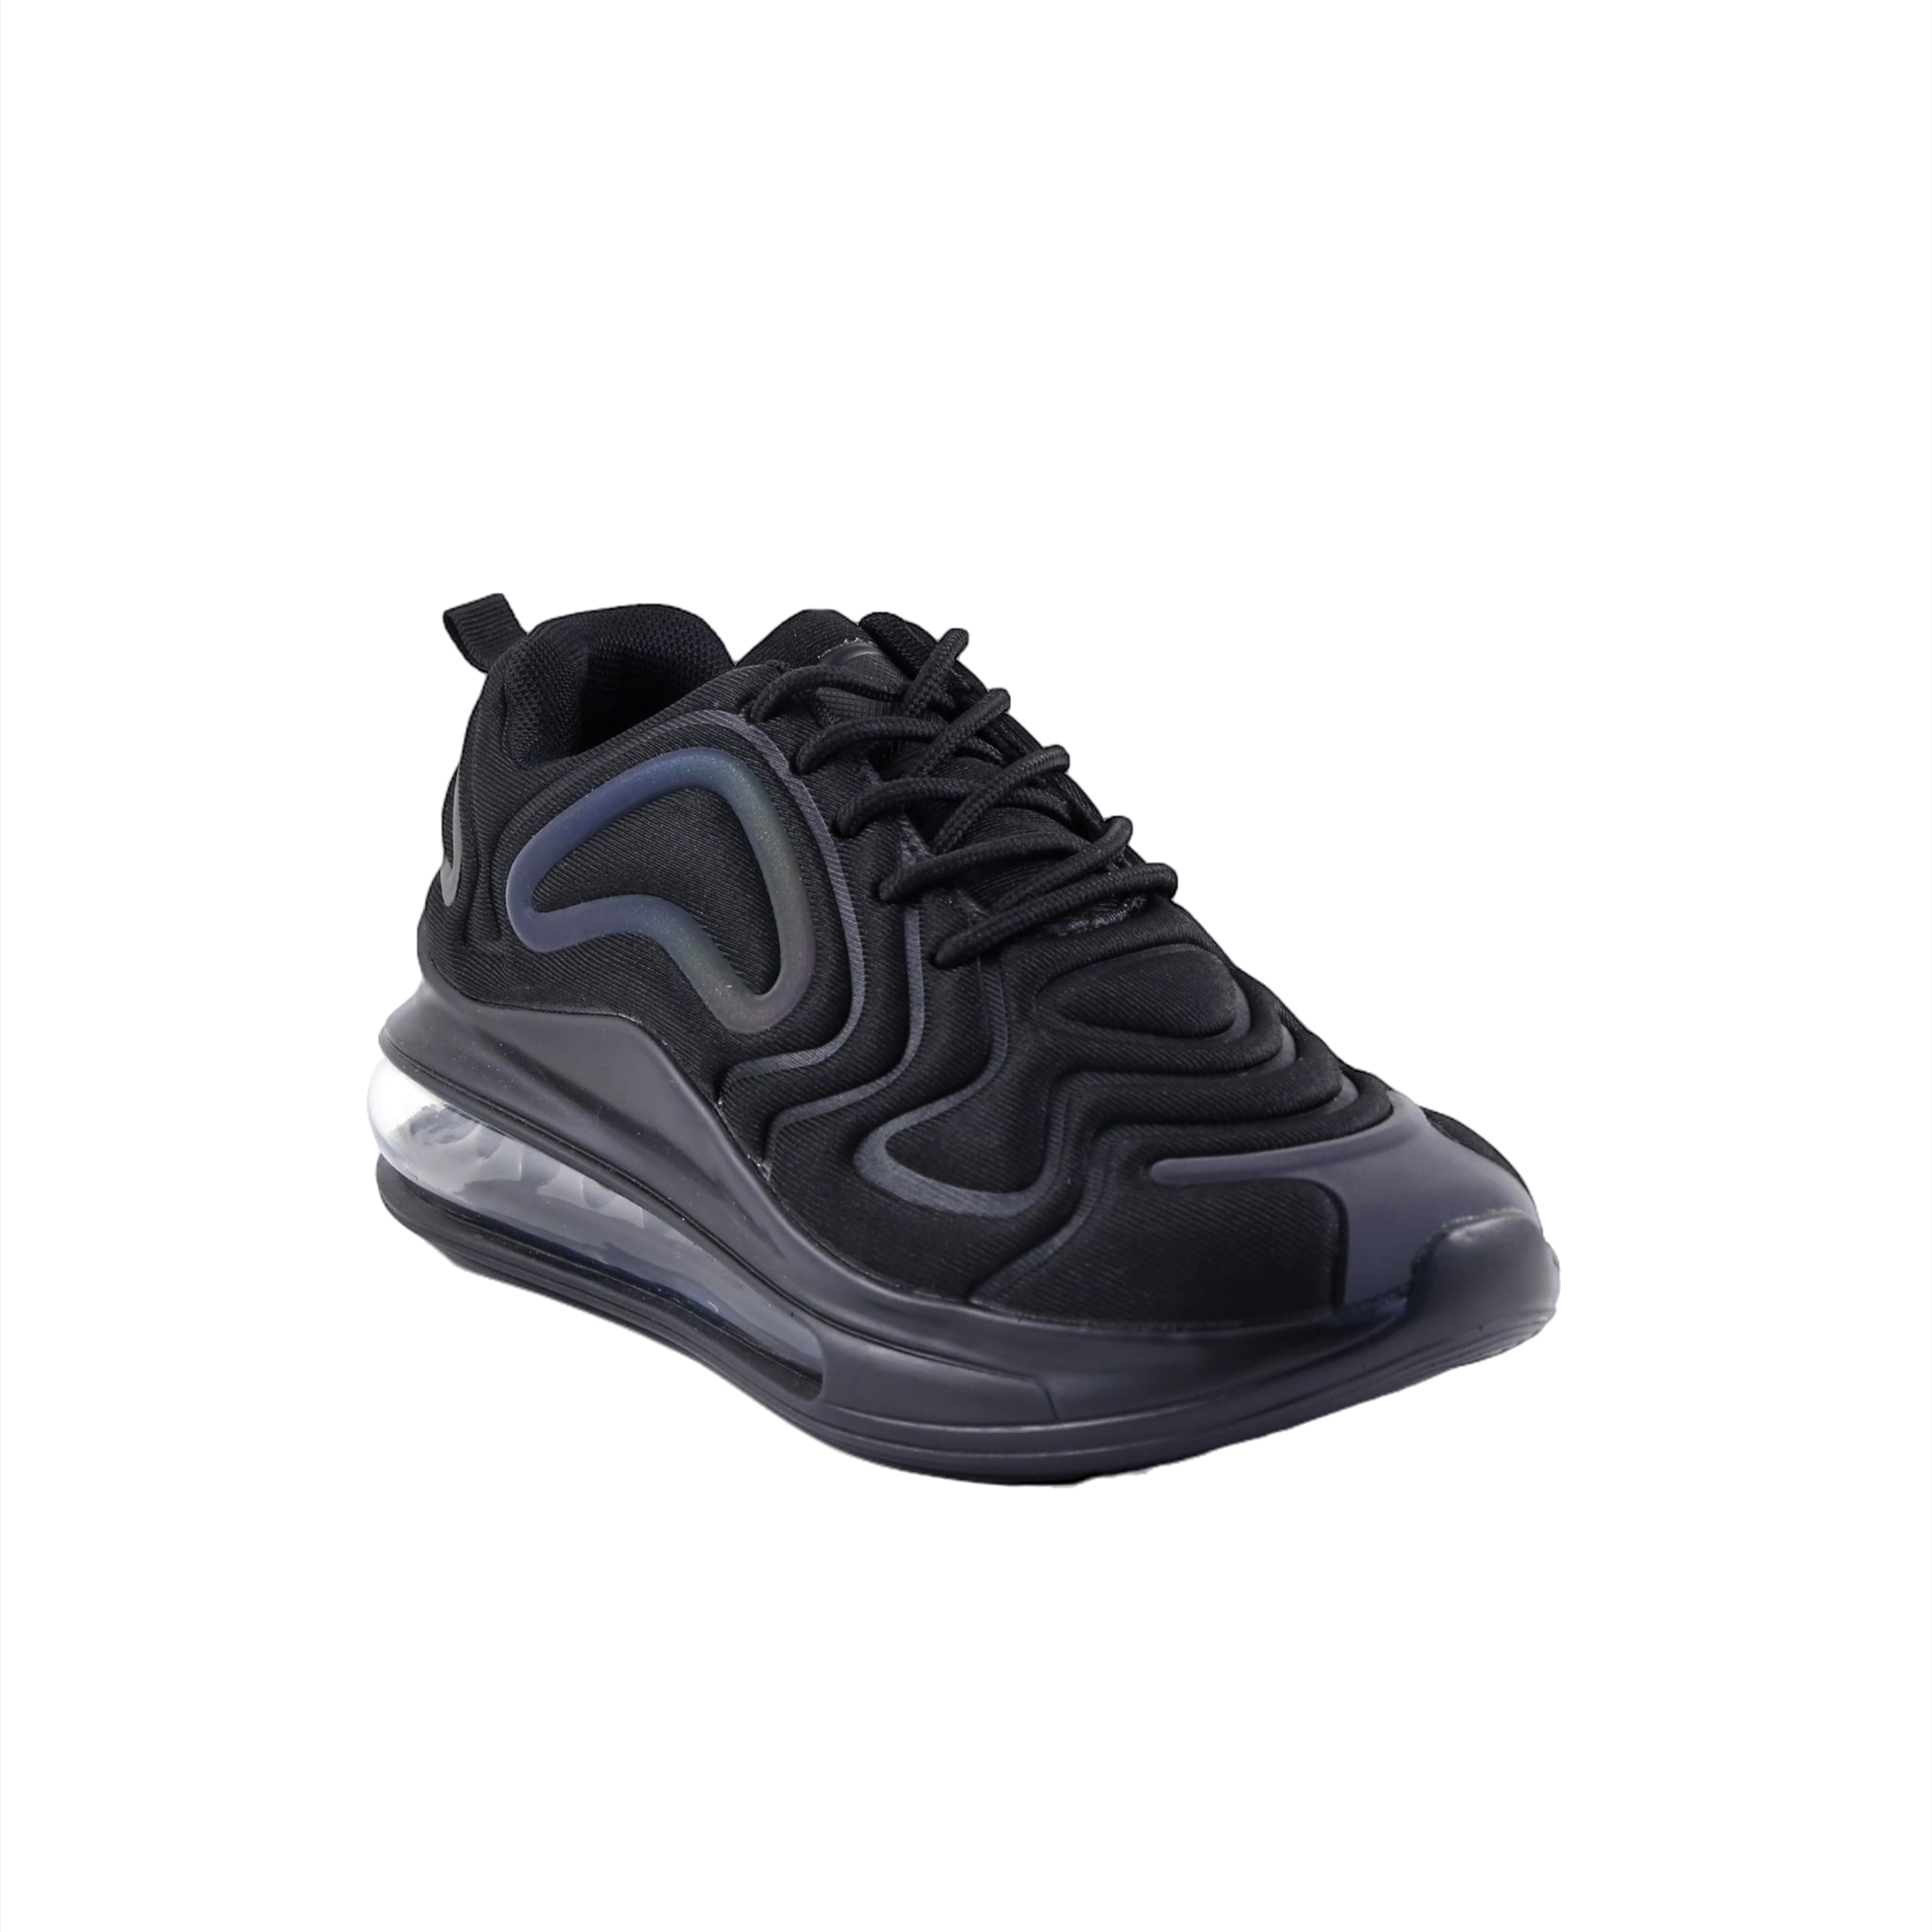 Γυναίκα Παπούτσια Casual-Sneakers Μαύρα casual sneakers 